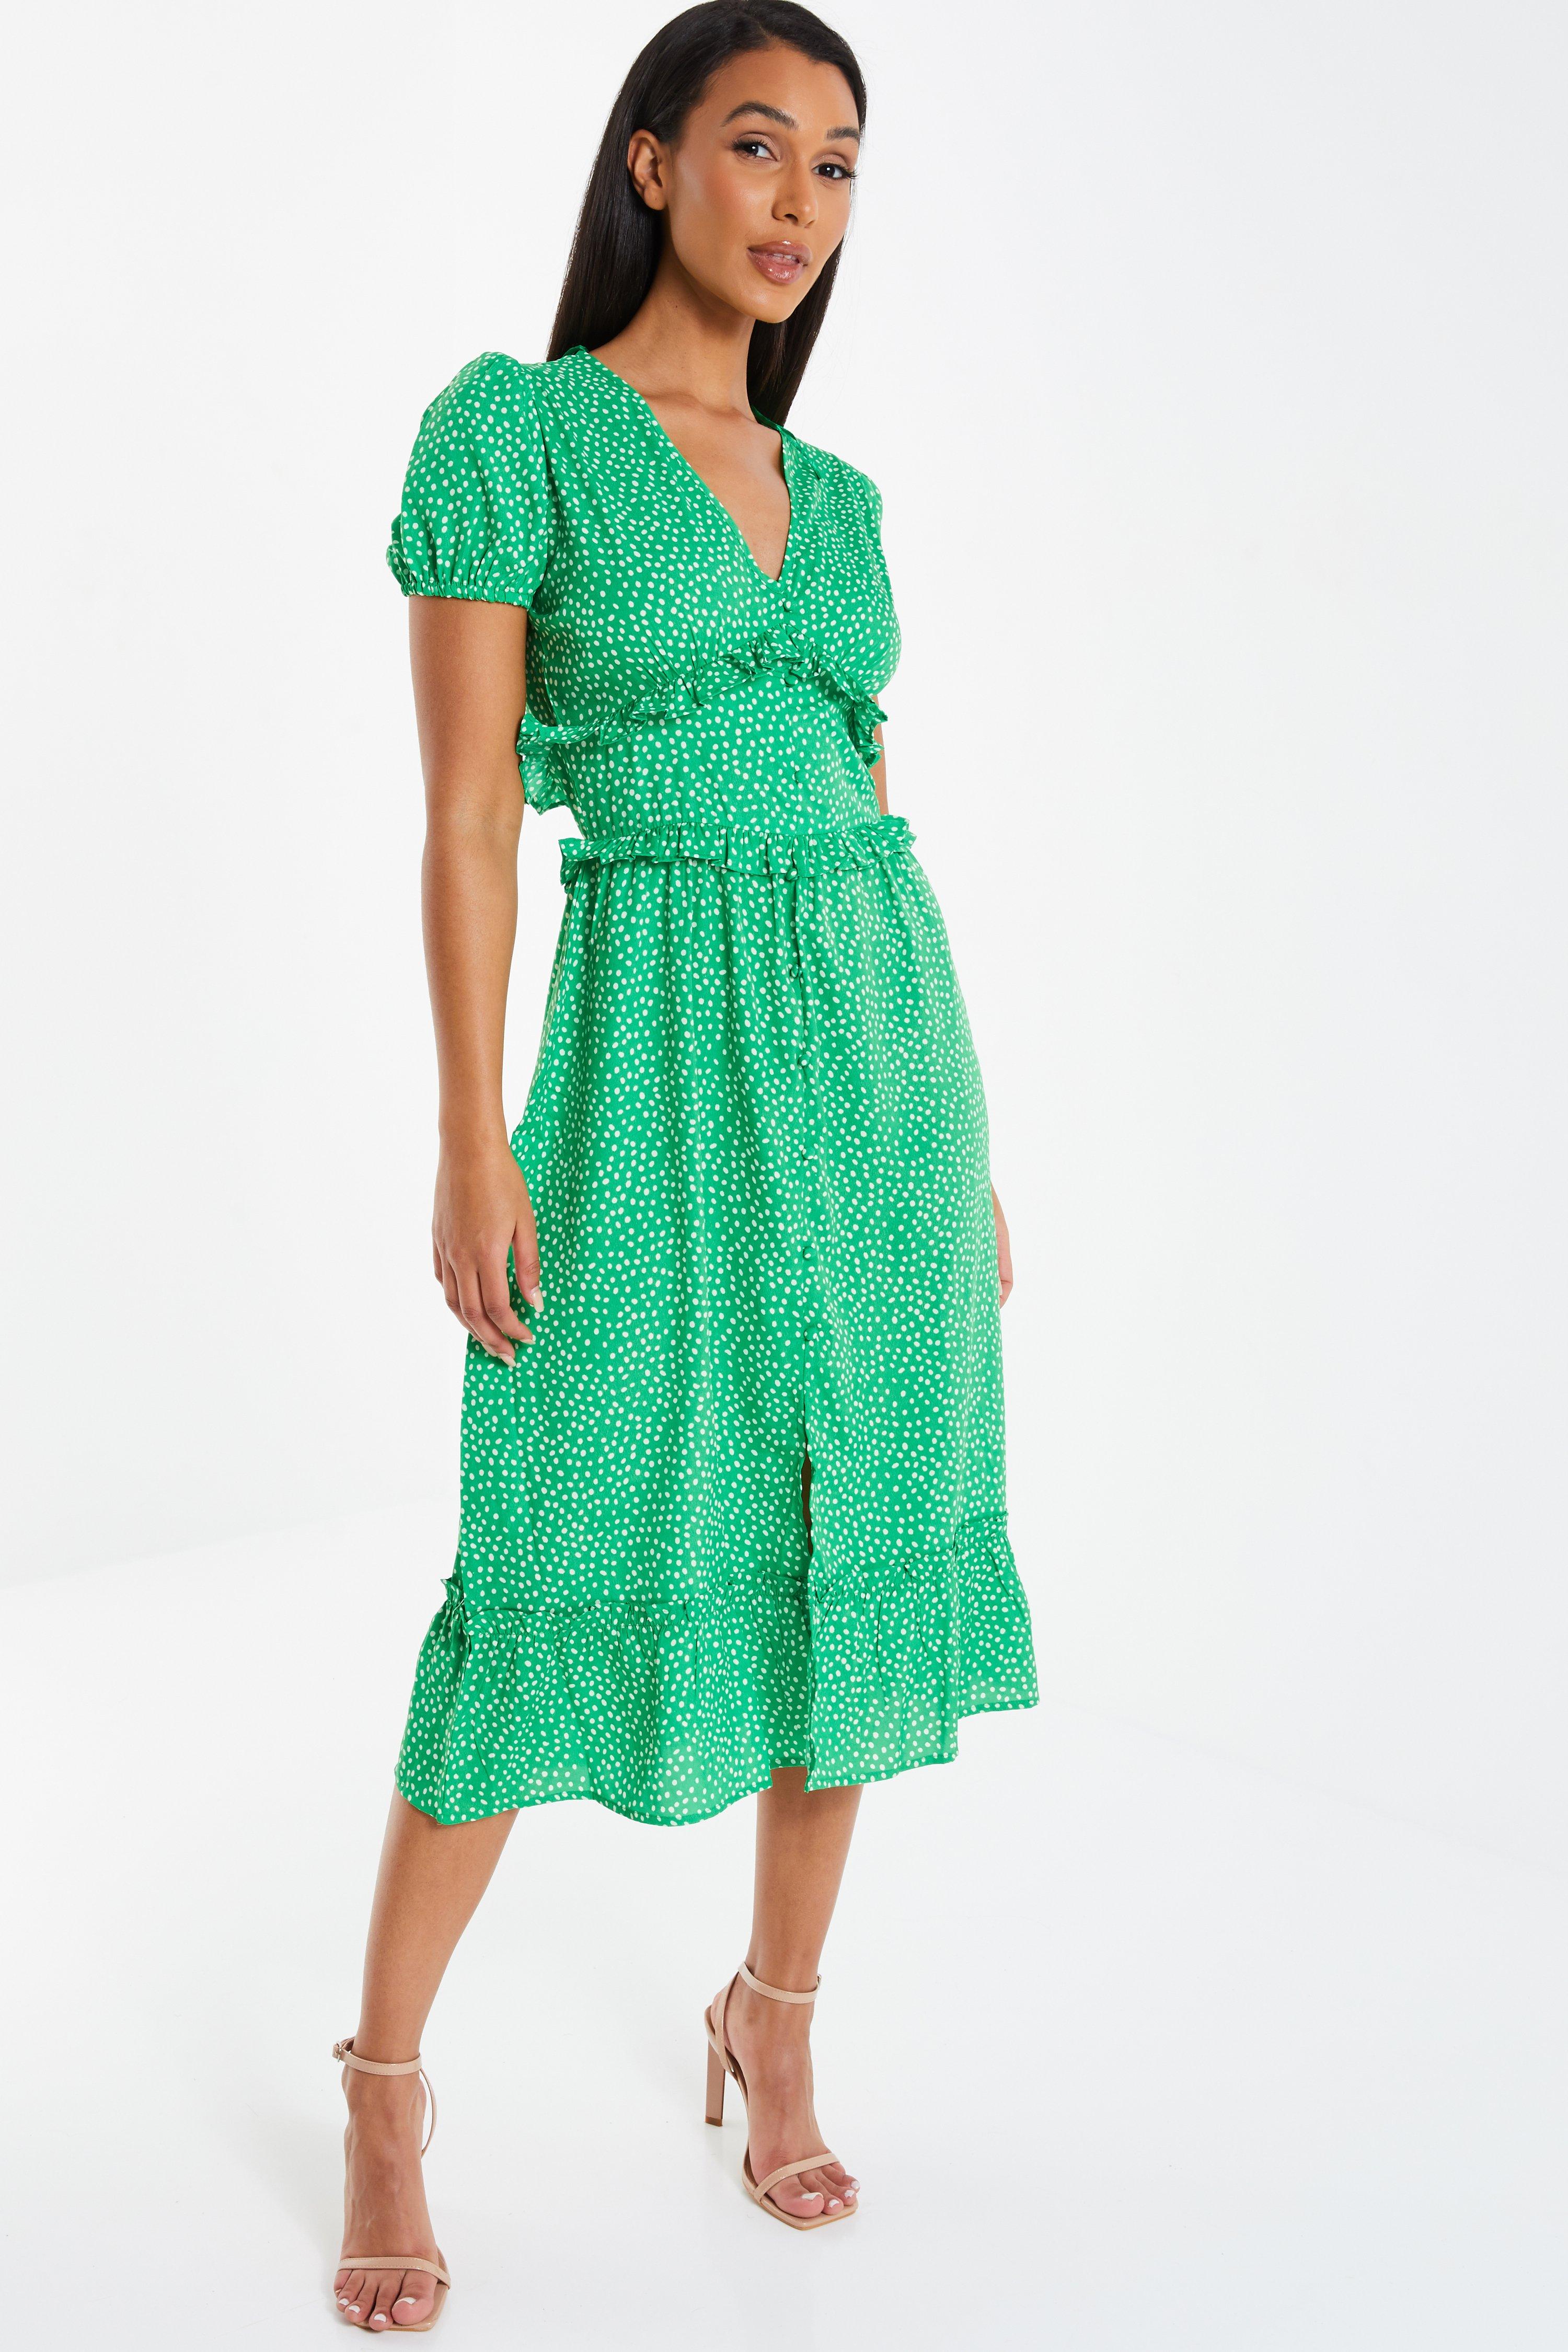 Green Dresses  Sage Teal ☀ Lime 